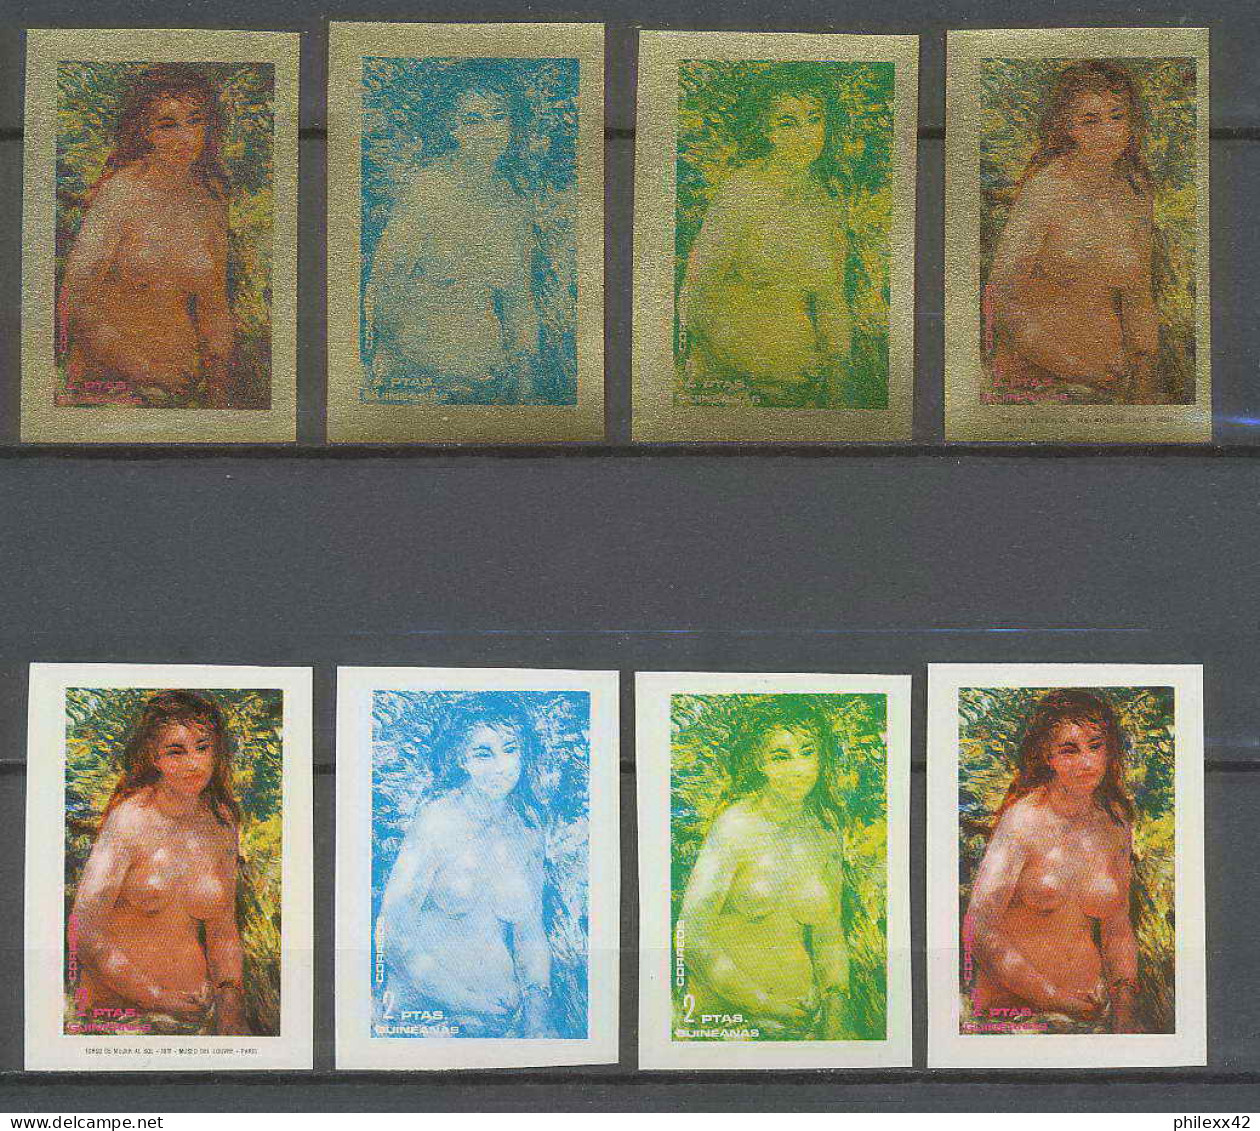 Guinée équatoriale Guinea 227 N°209 Renoir Essai Proof Non Dentelé Imperf Orate Tableau Painting Nus Nudes MNH ** - Nudes